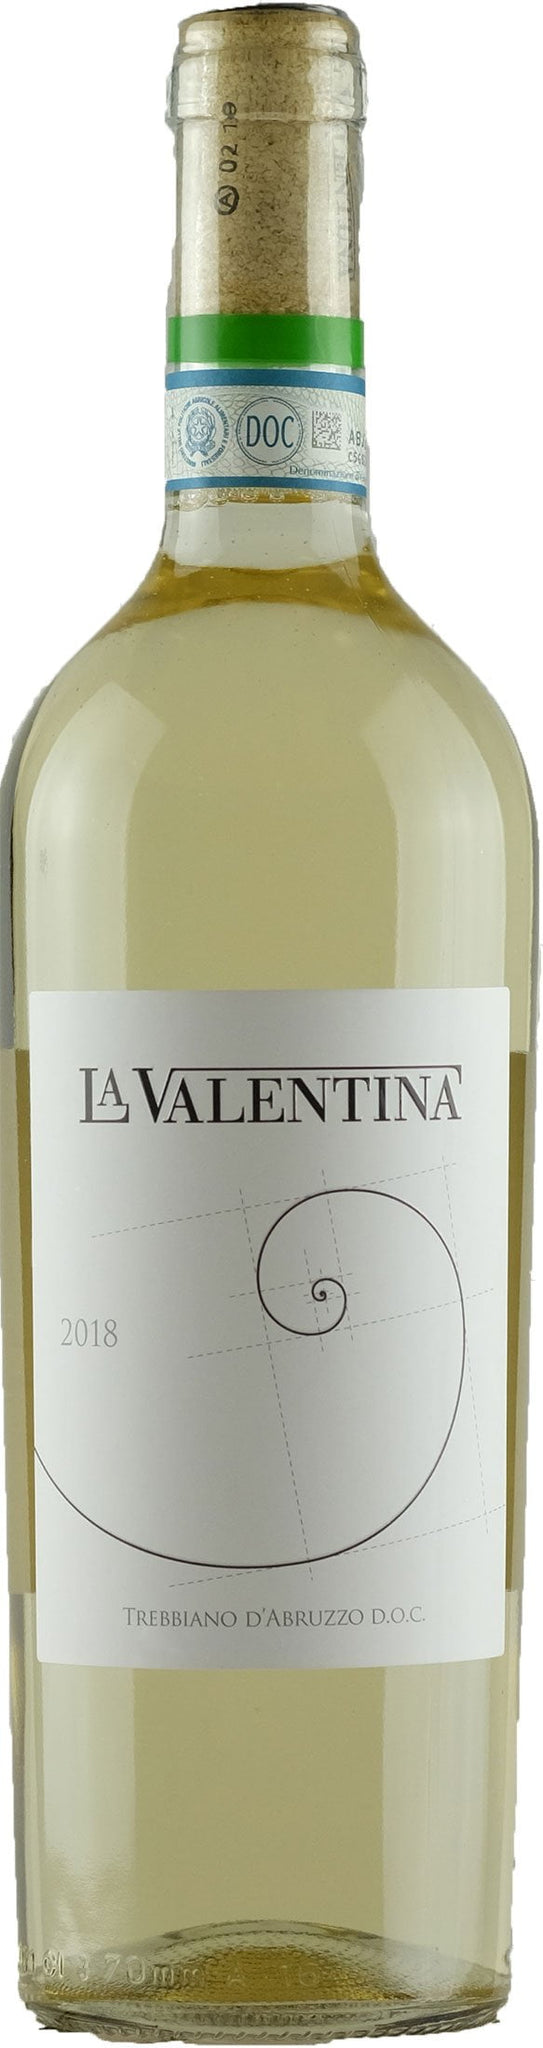 La Valentina Trebbiano d'Abruzzo Bianco 2018 (1x75cl) - TwoMoreGlasses.com